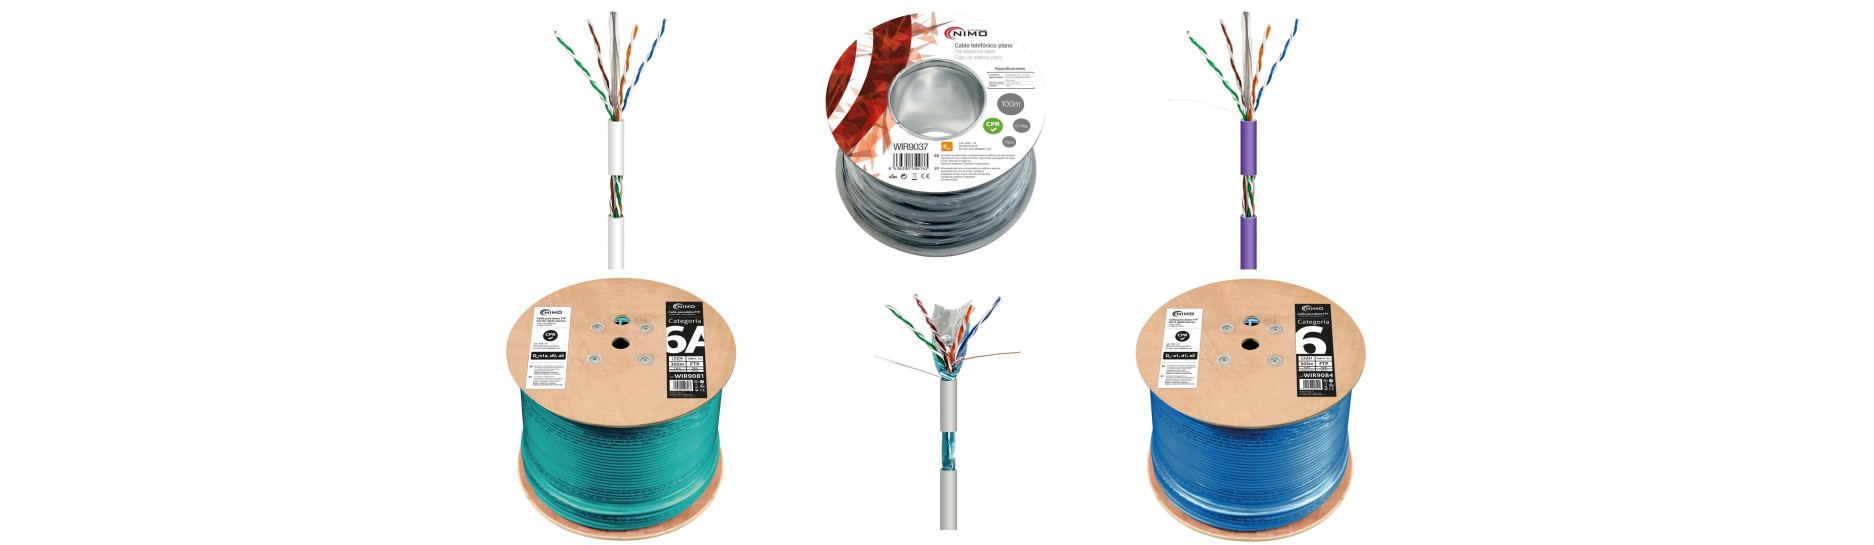 Rollos de Cable para REDES y Telefonía | Comprar Mantenimiento de Redes